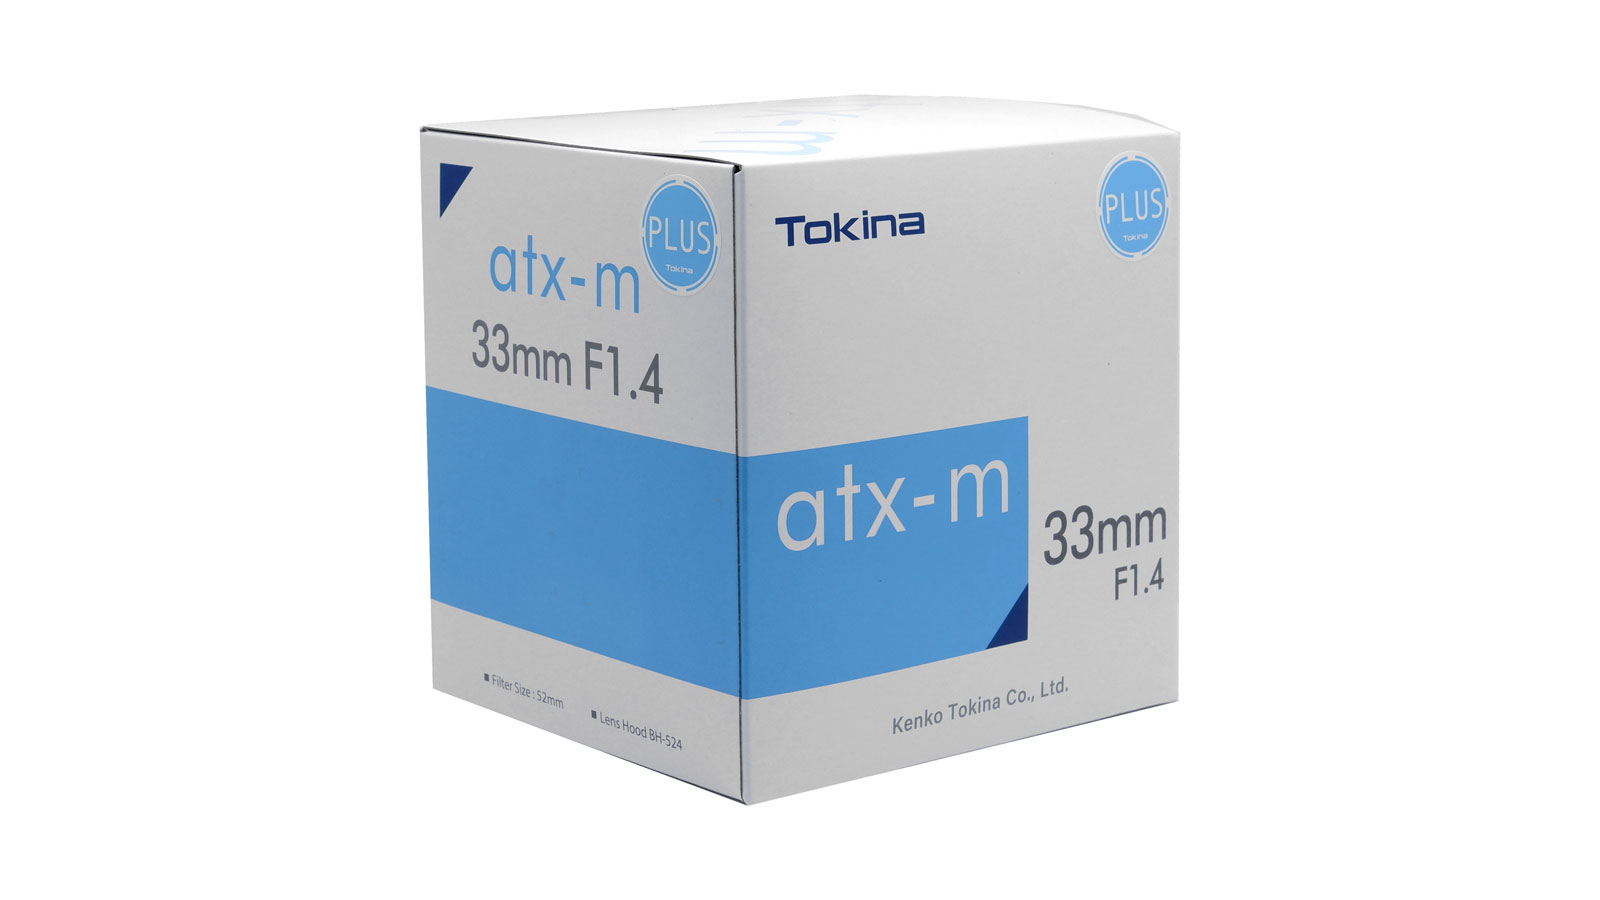 Пример упаковки серии Tokina atx-m с наклейкой "PLUS".